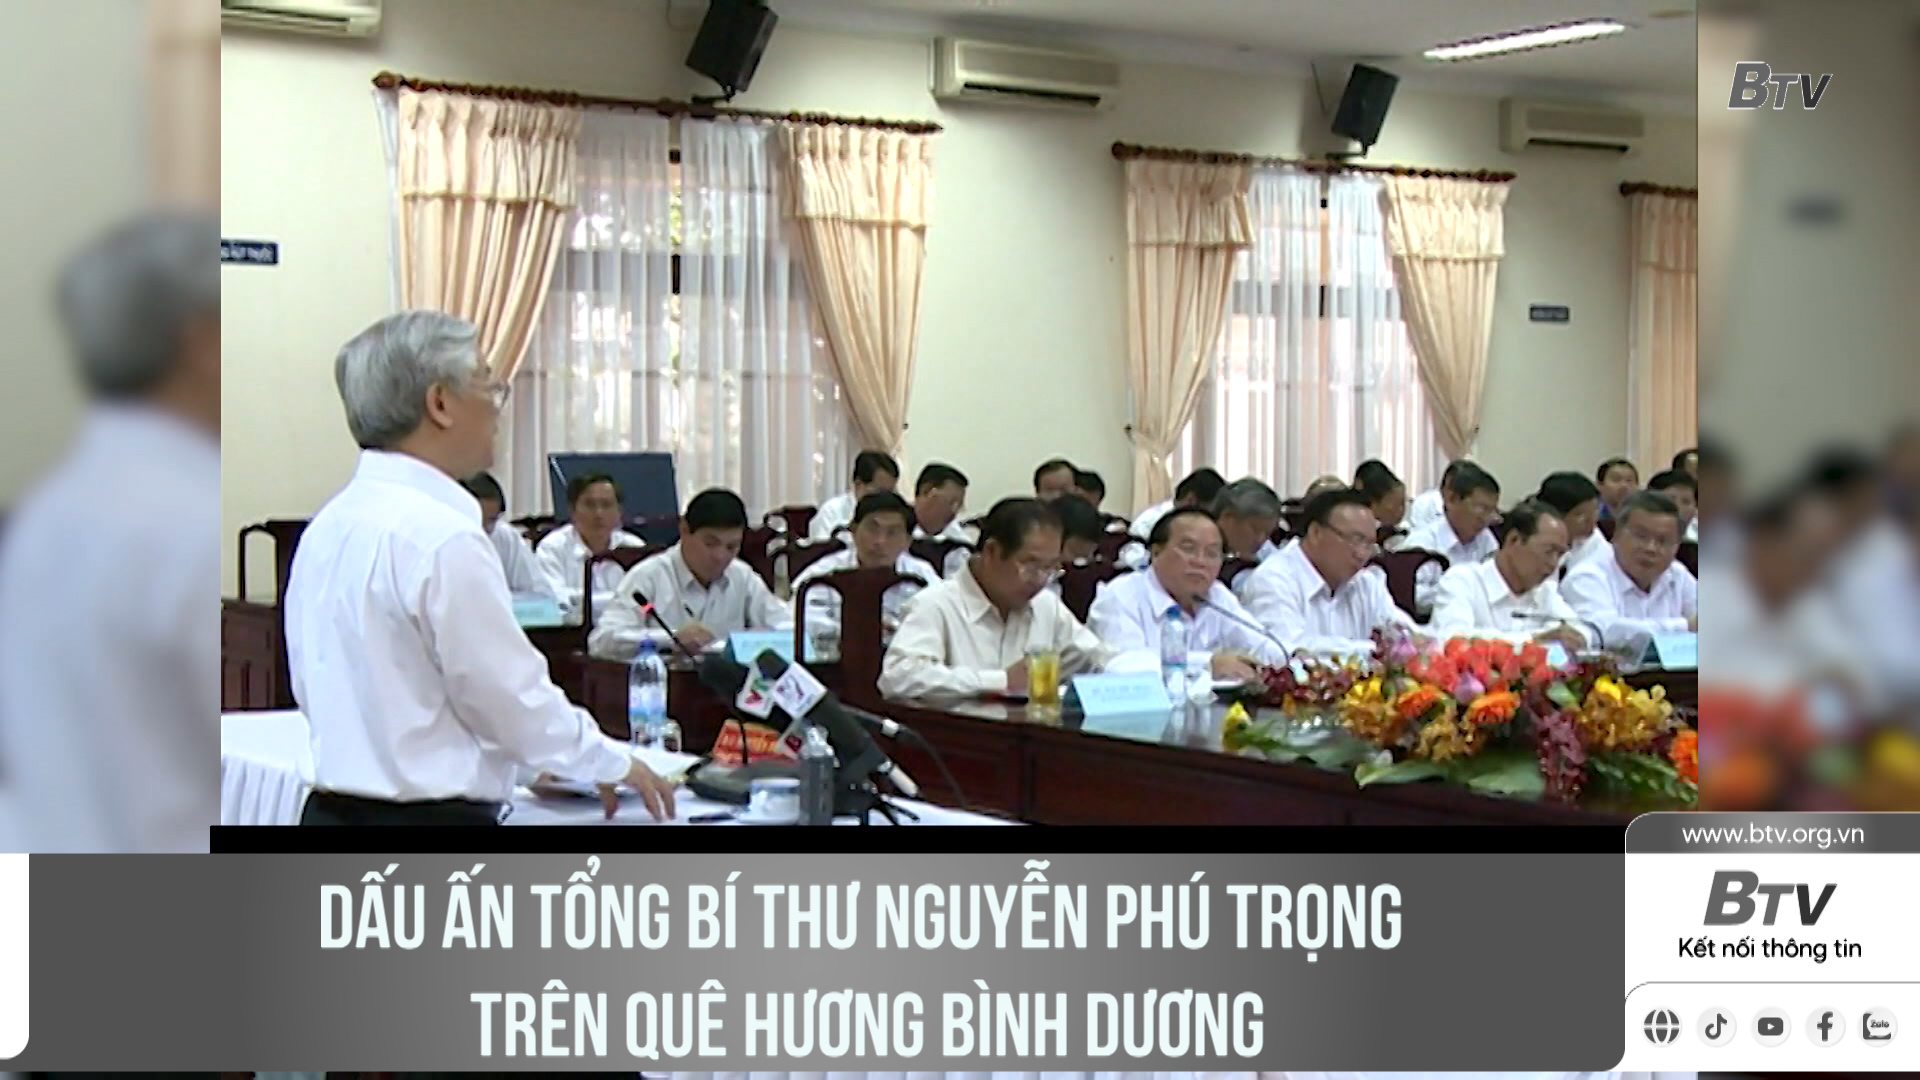 Dấu ấn Tổng Bí thư Nguyễn Phú Trọng trên quê hương Bình Dương